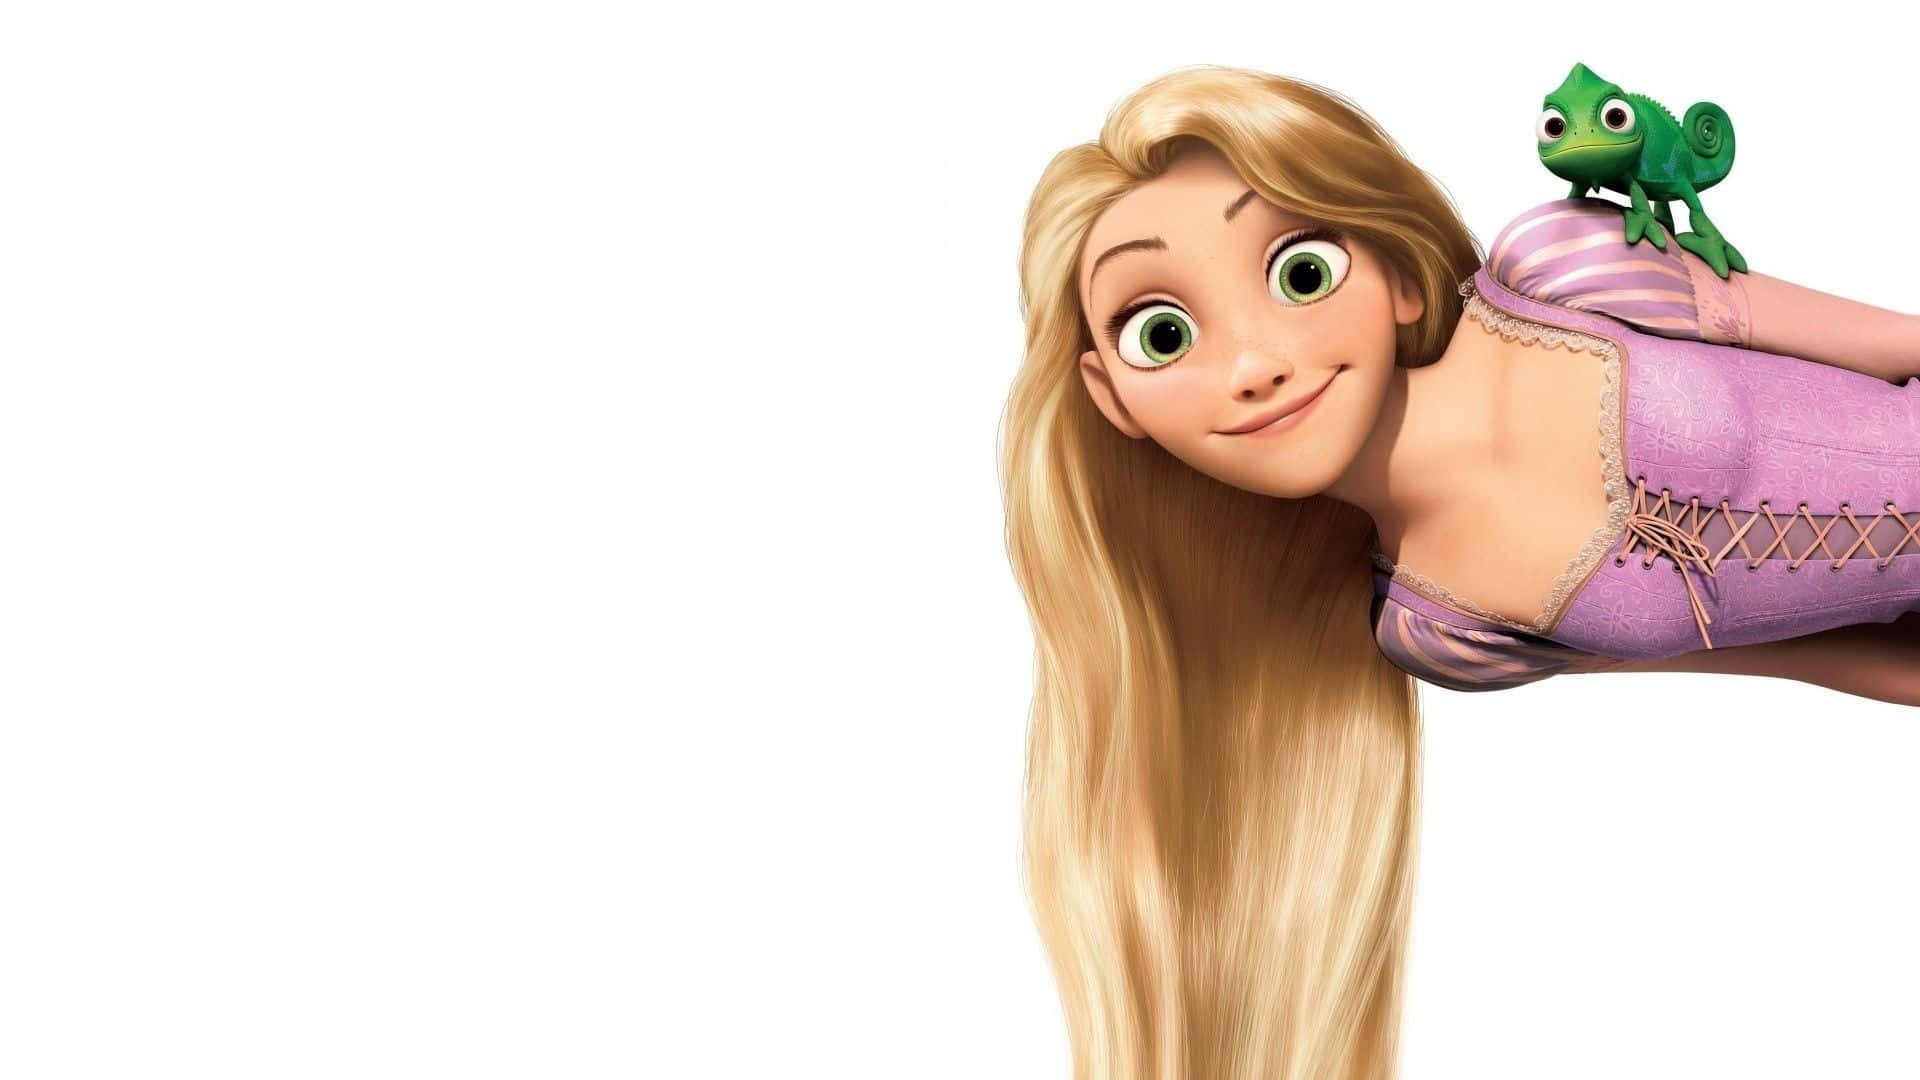 Rapunzelmaler En Stjerne På Nattehimlen I Disney's 